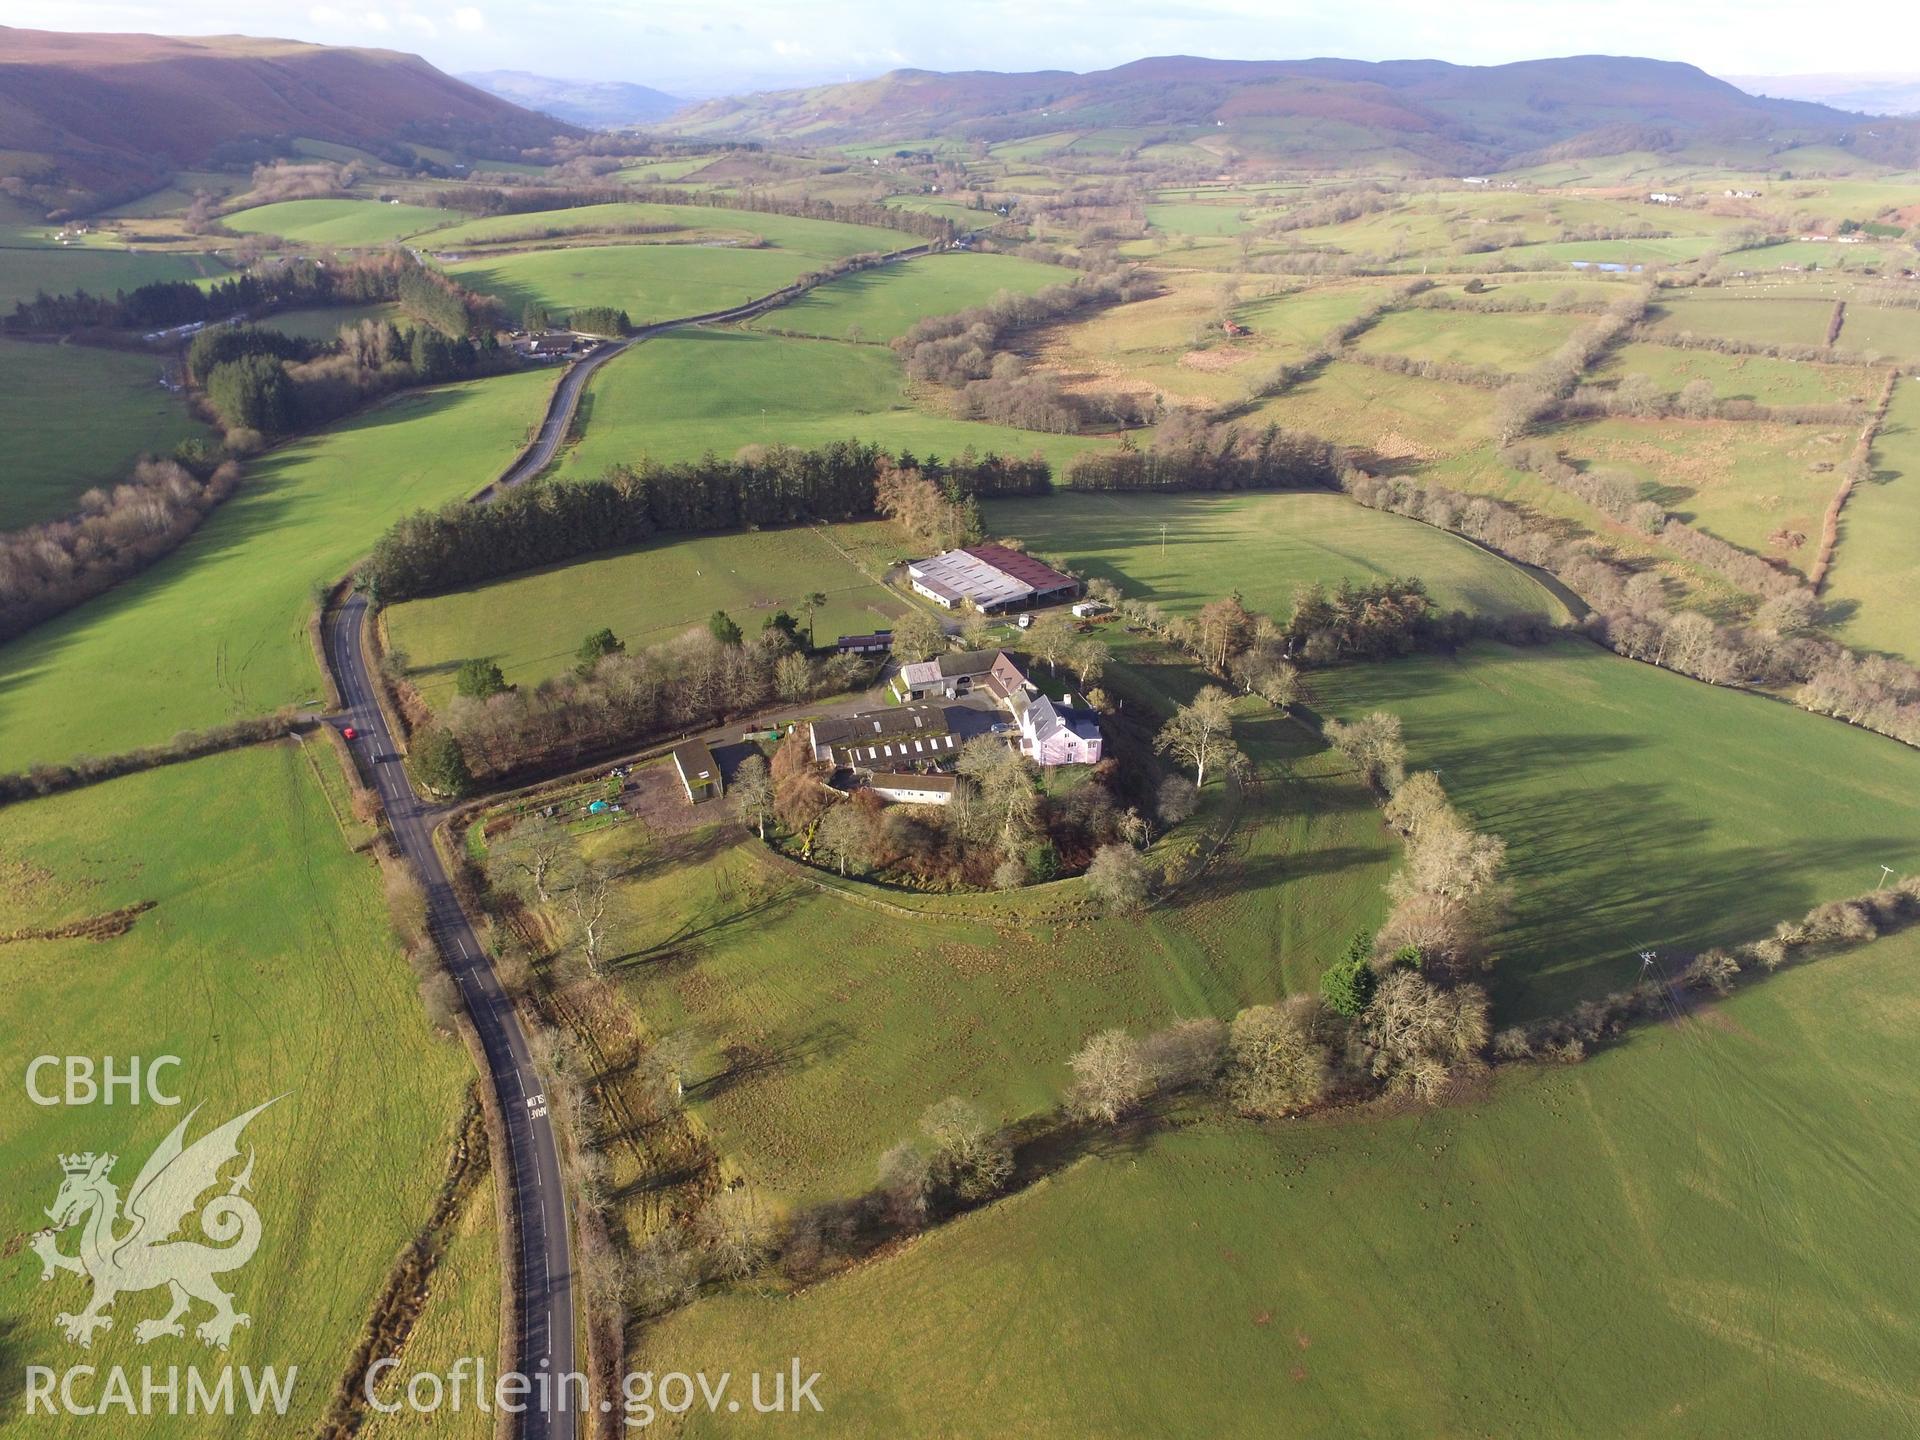 Photo showing view of Colwyn Castle taken by Paul R. Davis, 2018.